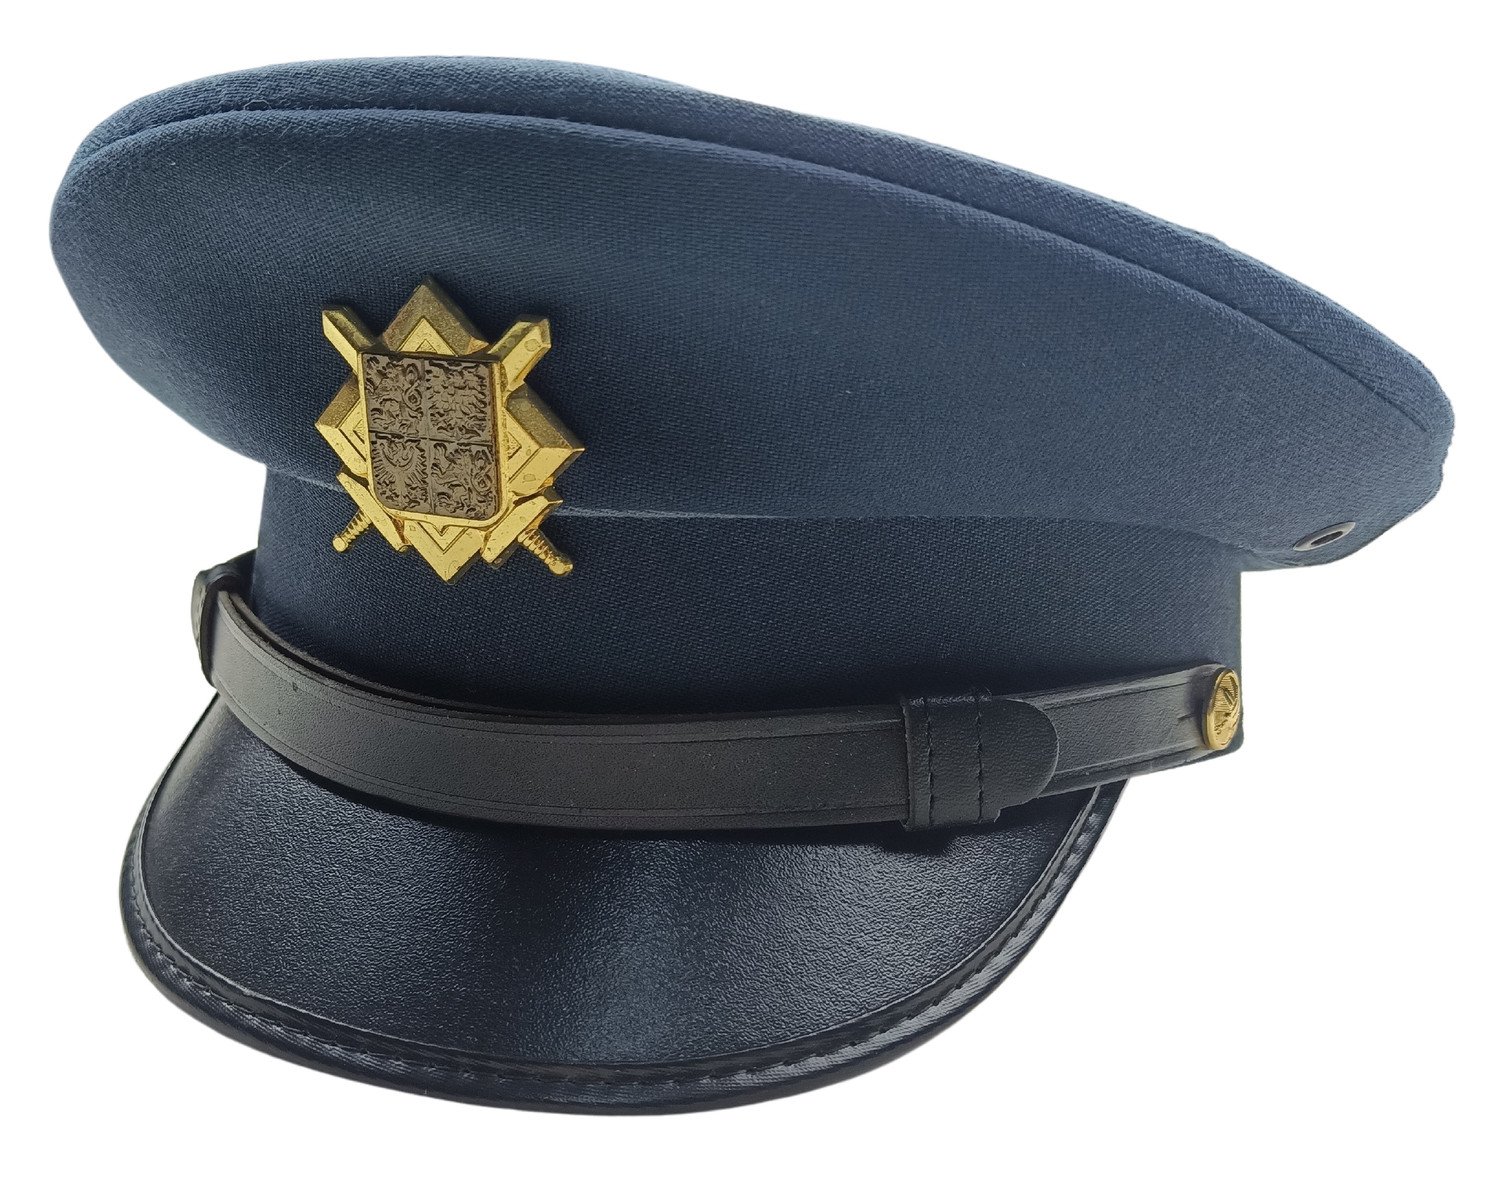 Brigadýrka služební s odznakem AČR modrá vz.97 vzdušné síly originál Velikost: 60